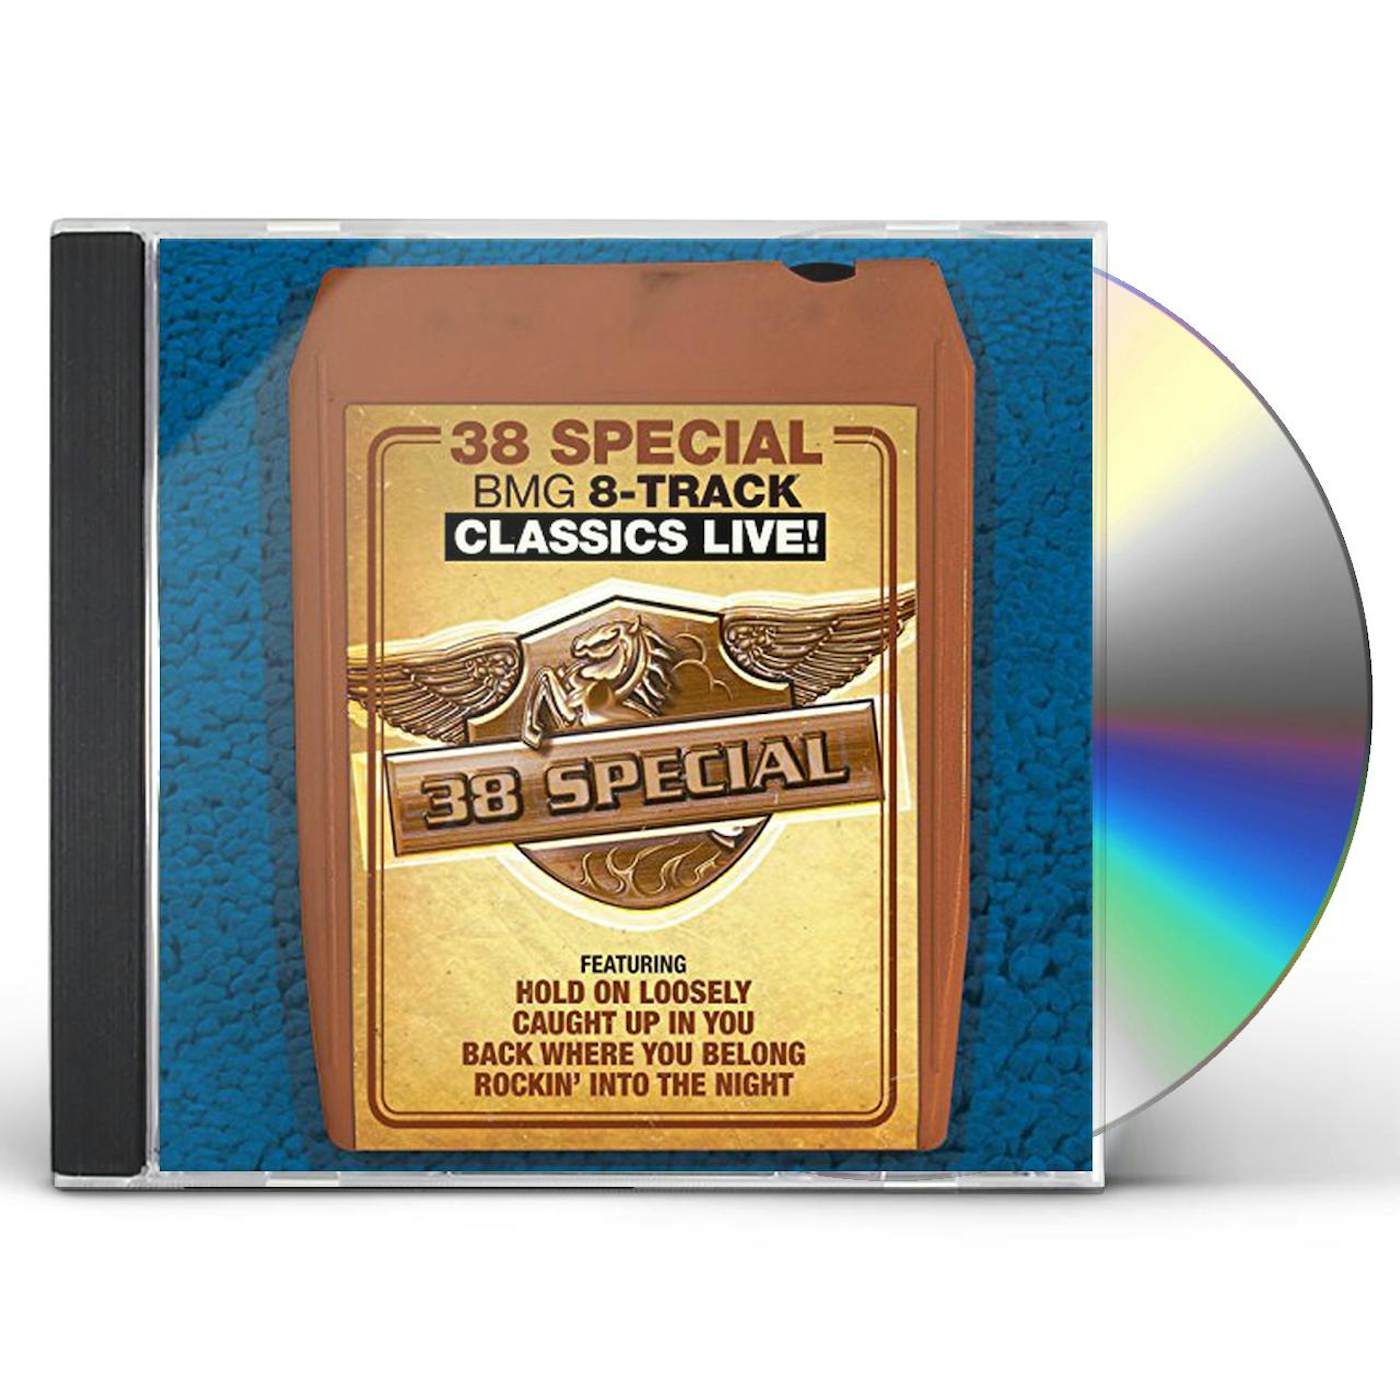 38 Special BMG 8-TRACK CLASSICS LIVE CD